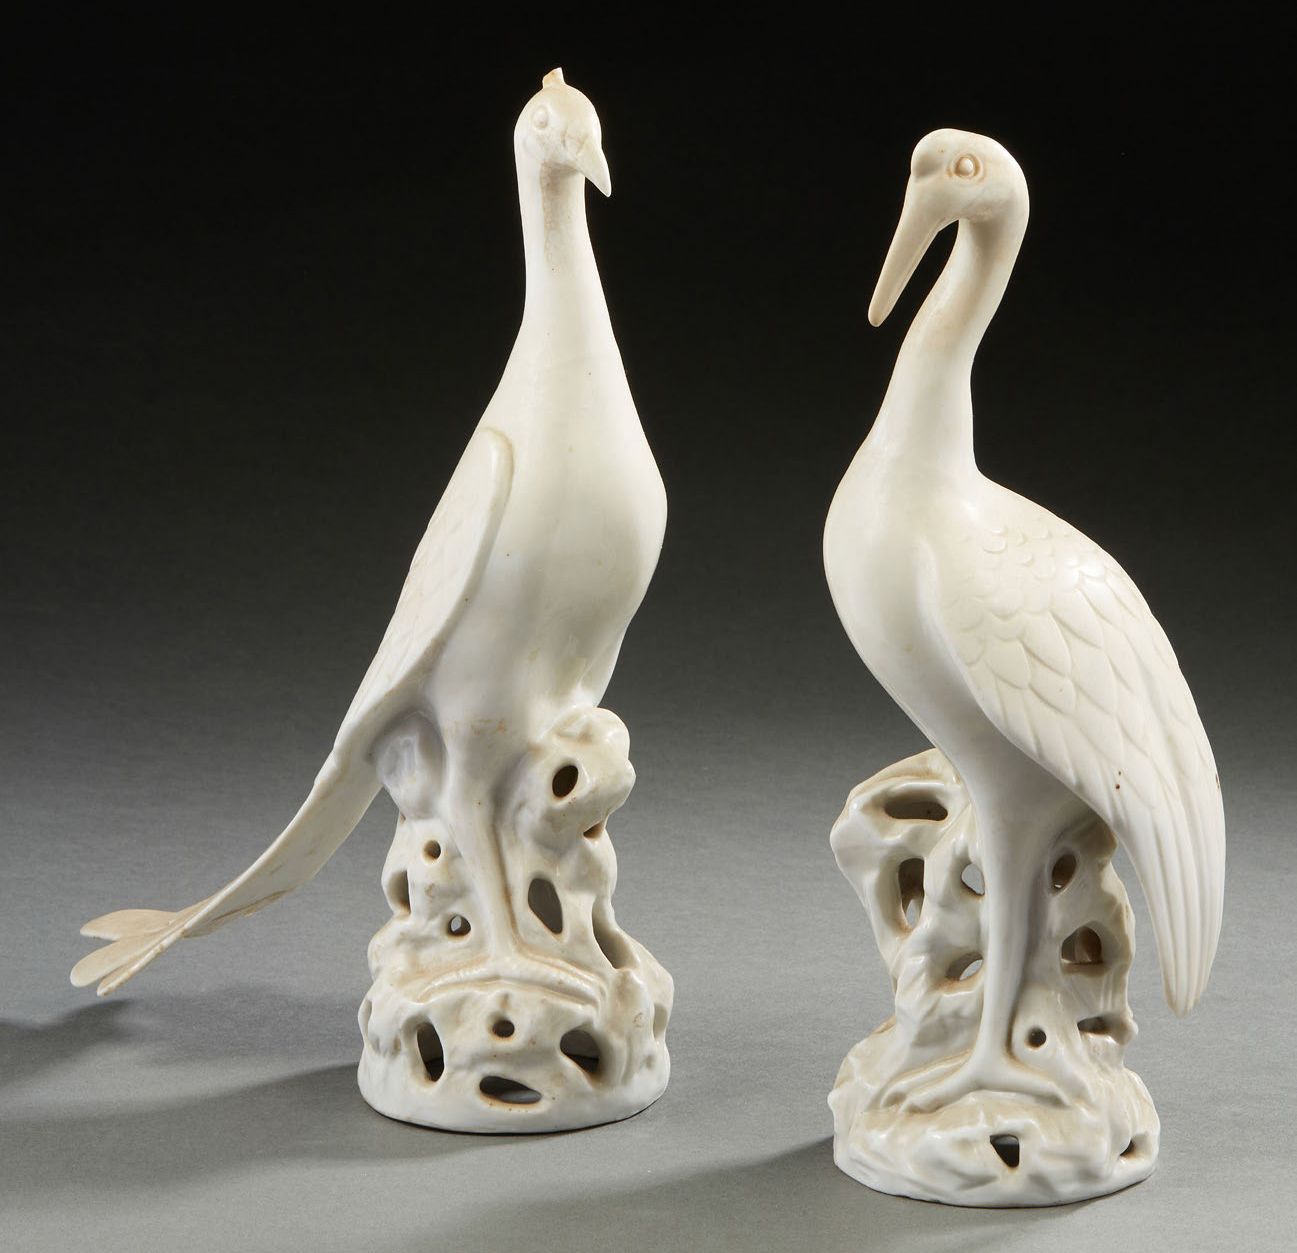 CHINE, XXe siècle 两只白瓷鸟代表孔雀和鹤，栖息在岩石上。(事故和对孔雀的修复）。
H.31厘米